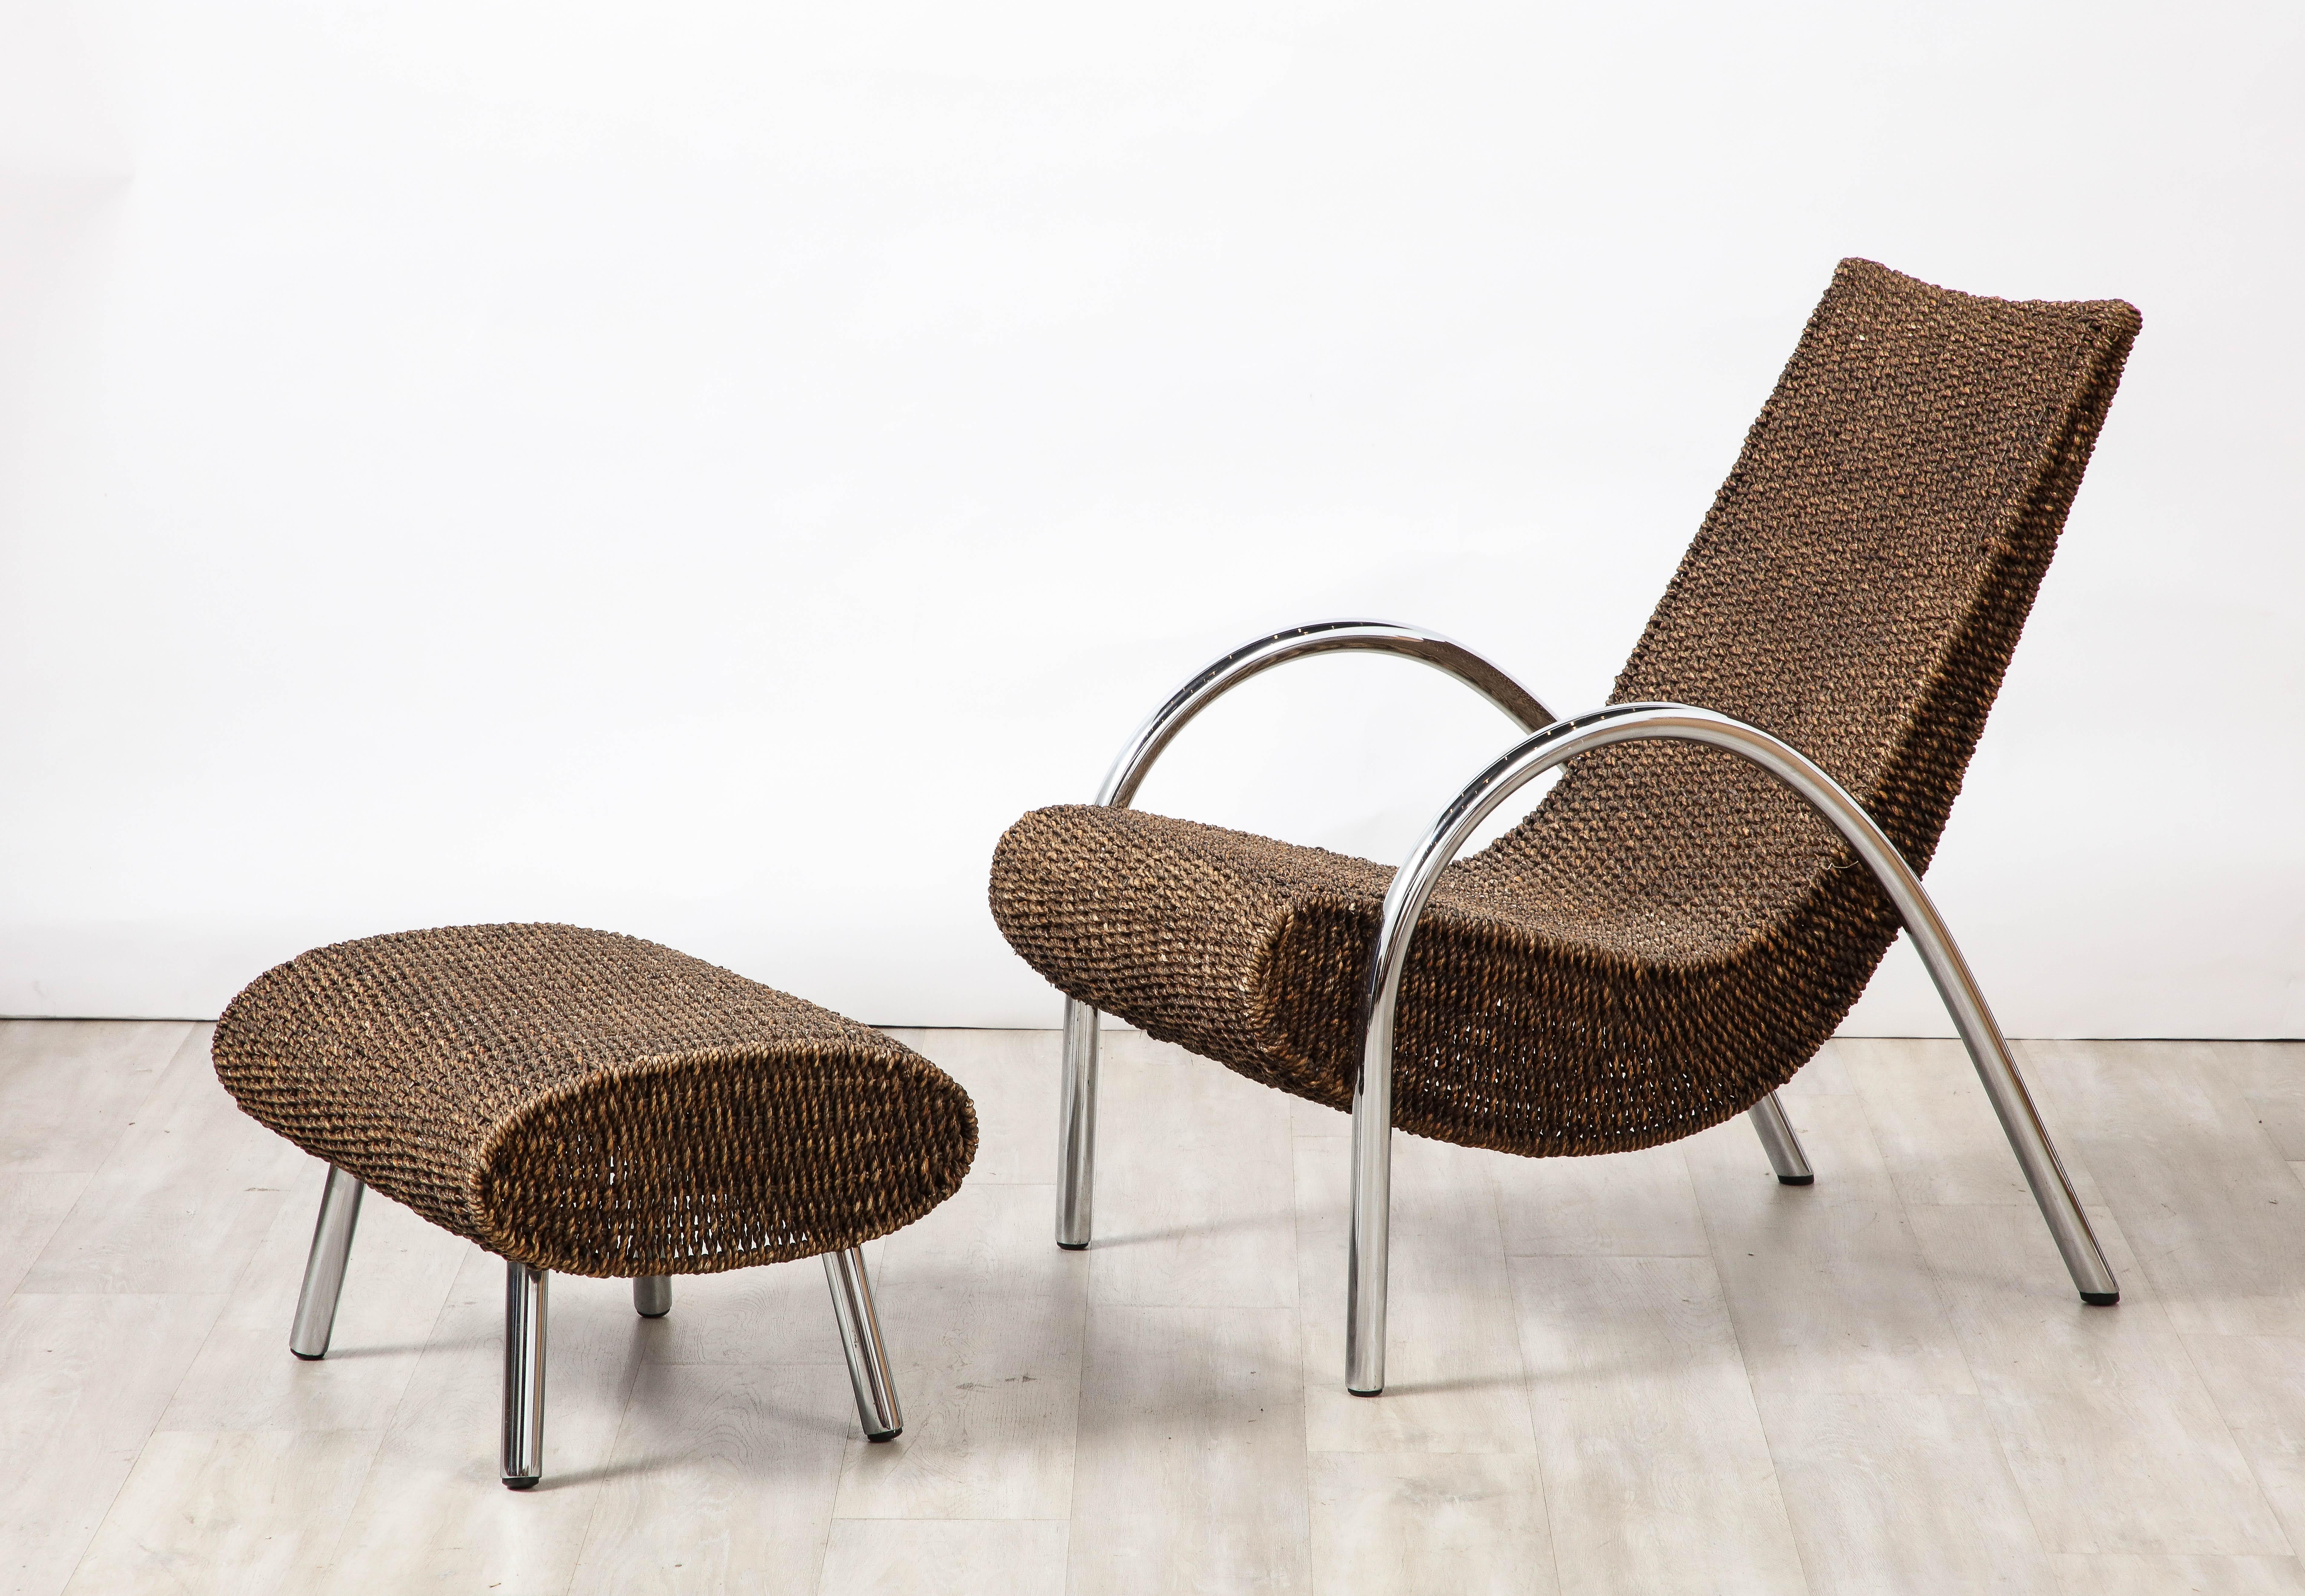 Spanischer Loungesessel aus geformtem Bambus der 1960er Jahre mit verchromten schrägen Armlehnen und passender Ottomane.  Äußerst einzigartig, skulptural und organisch.  Ein wunderbarer Kontrast zwischen den natürlichen MATERIALEN und dem